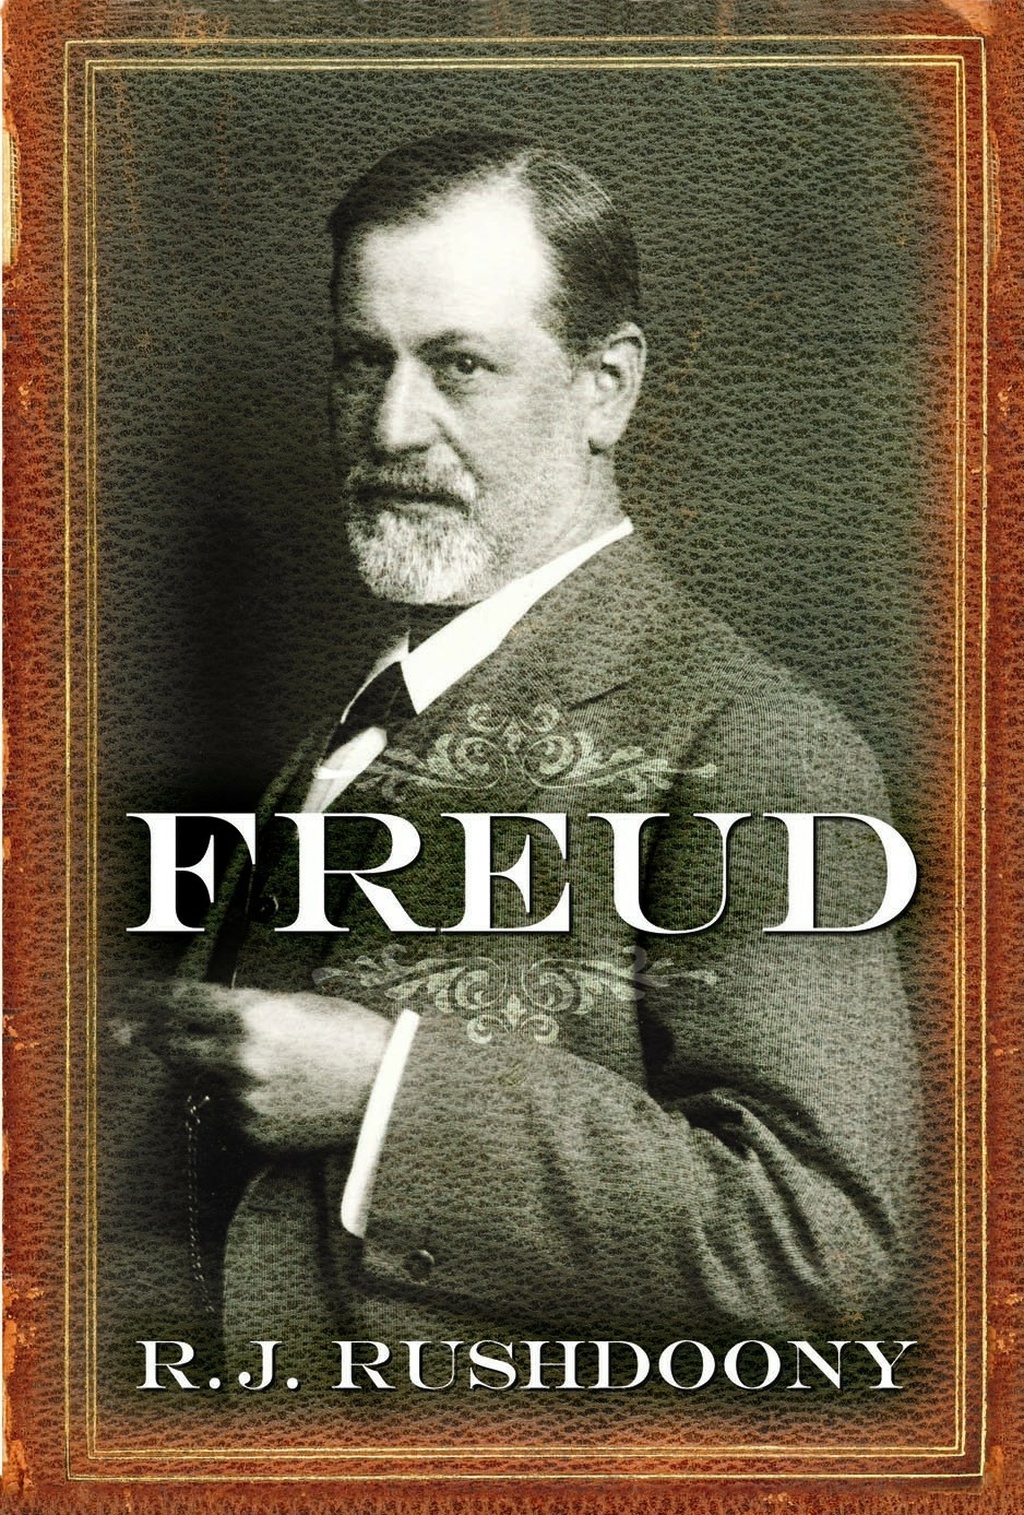 Freud 938x1388 1